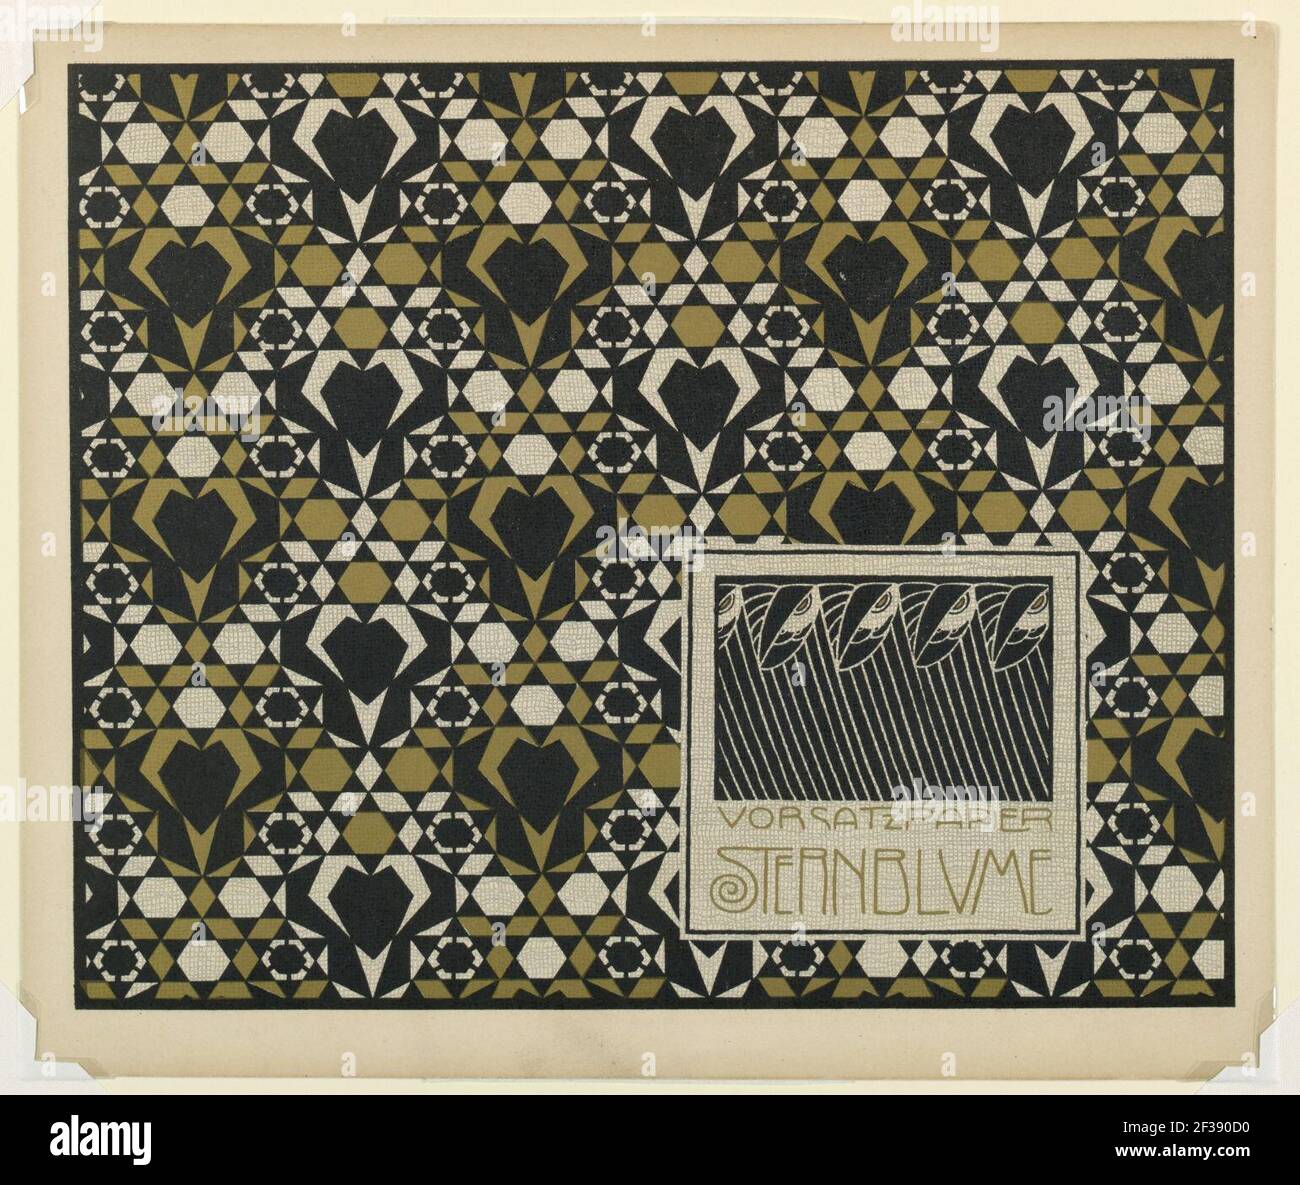 Stampa, Vorsatz Papier Sternblume (Star Flower Book End Paper), piatto 2, in Die quelle- Flächen Schmuck (la sorgente-ornamento per superfici piane), 1901 Foto Stock